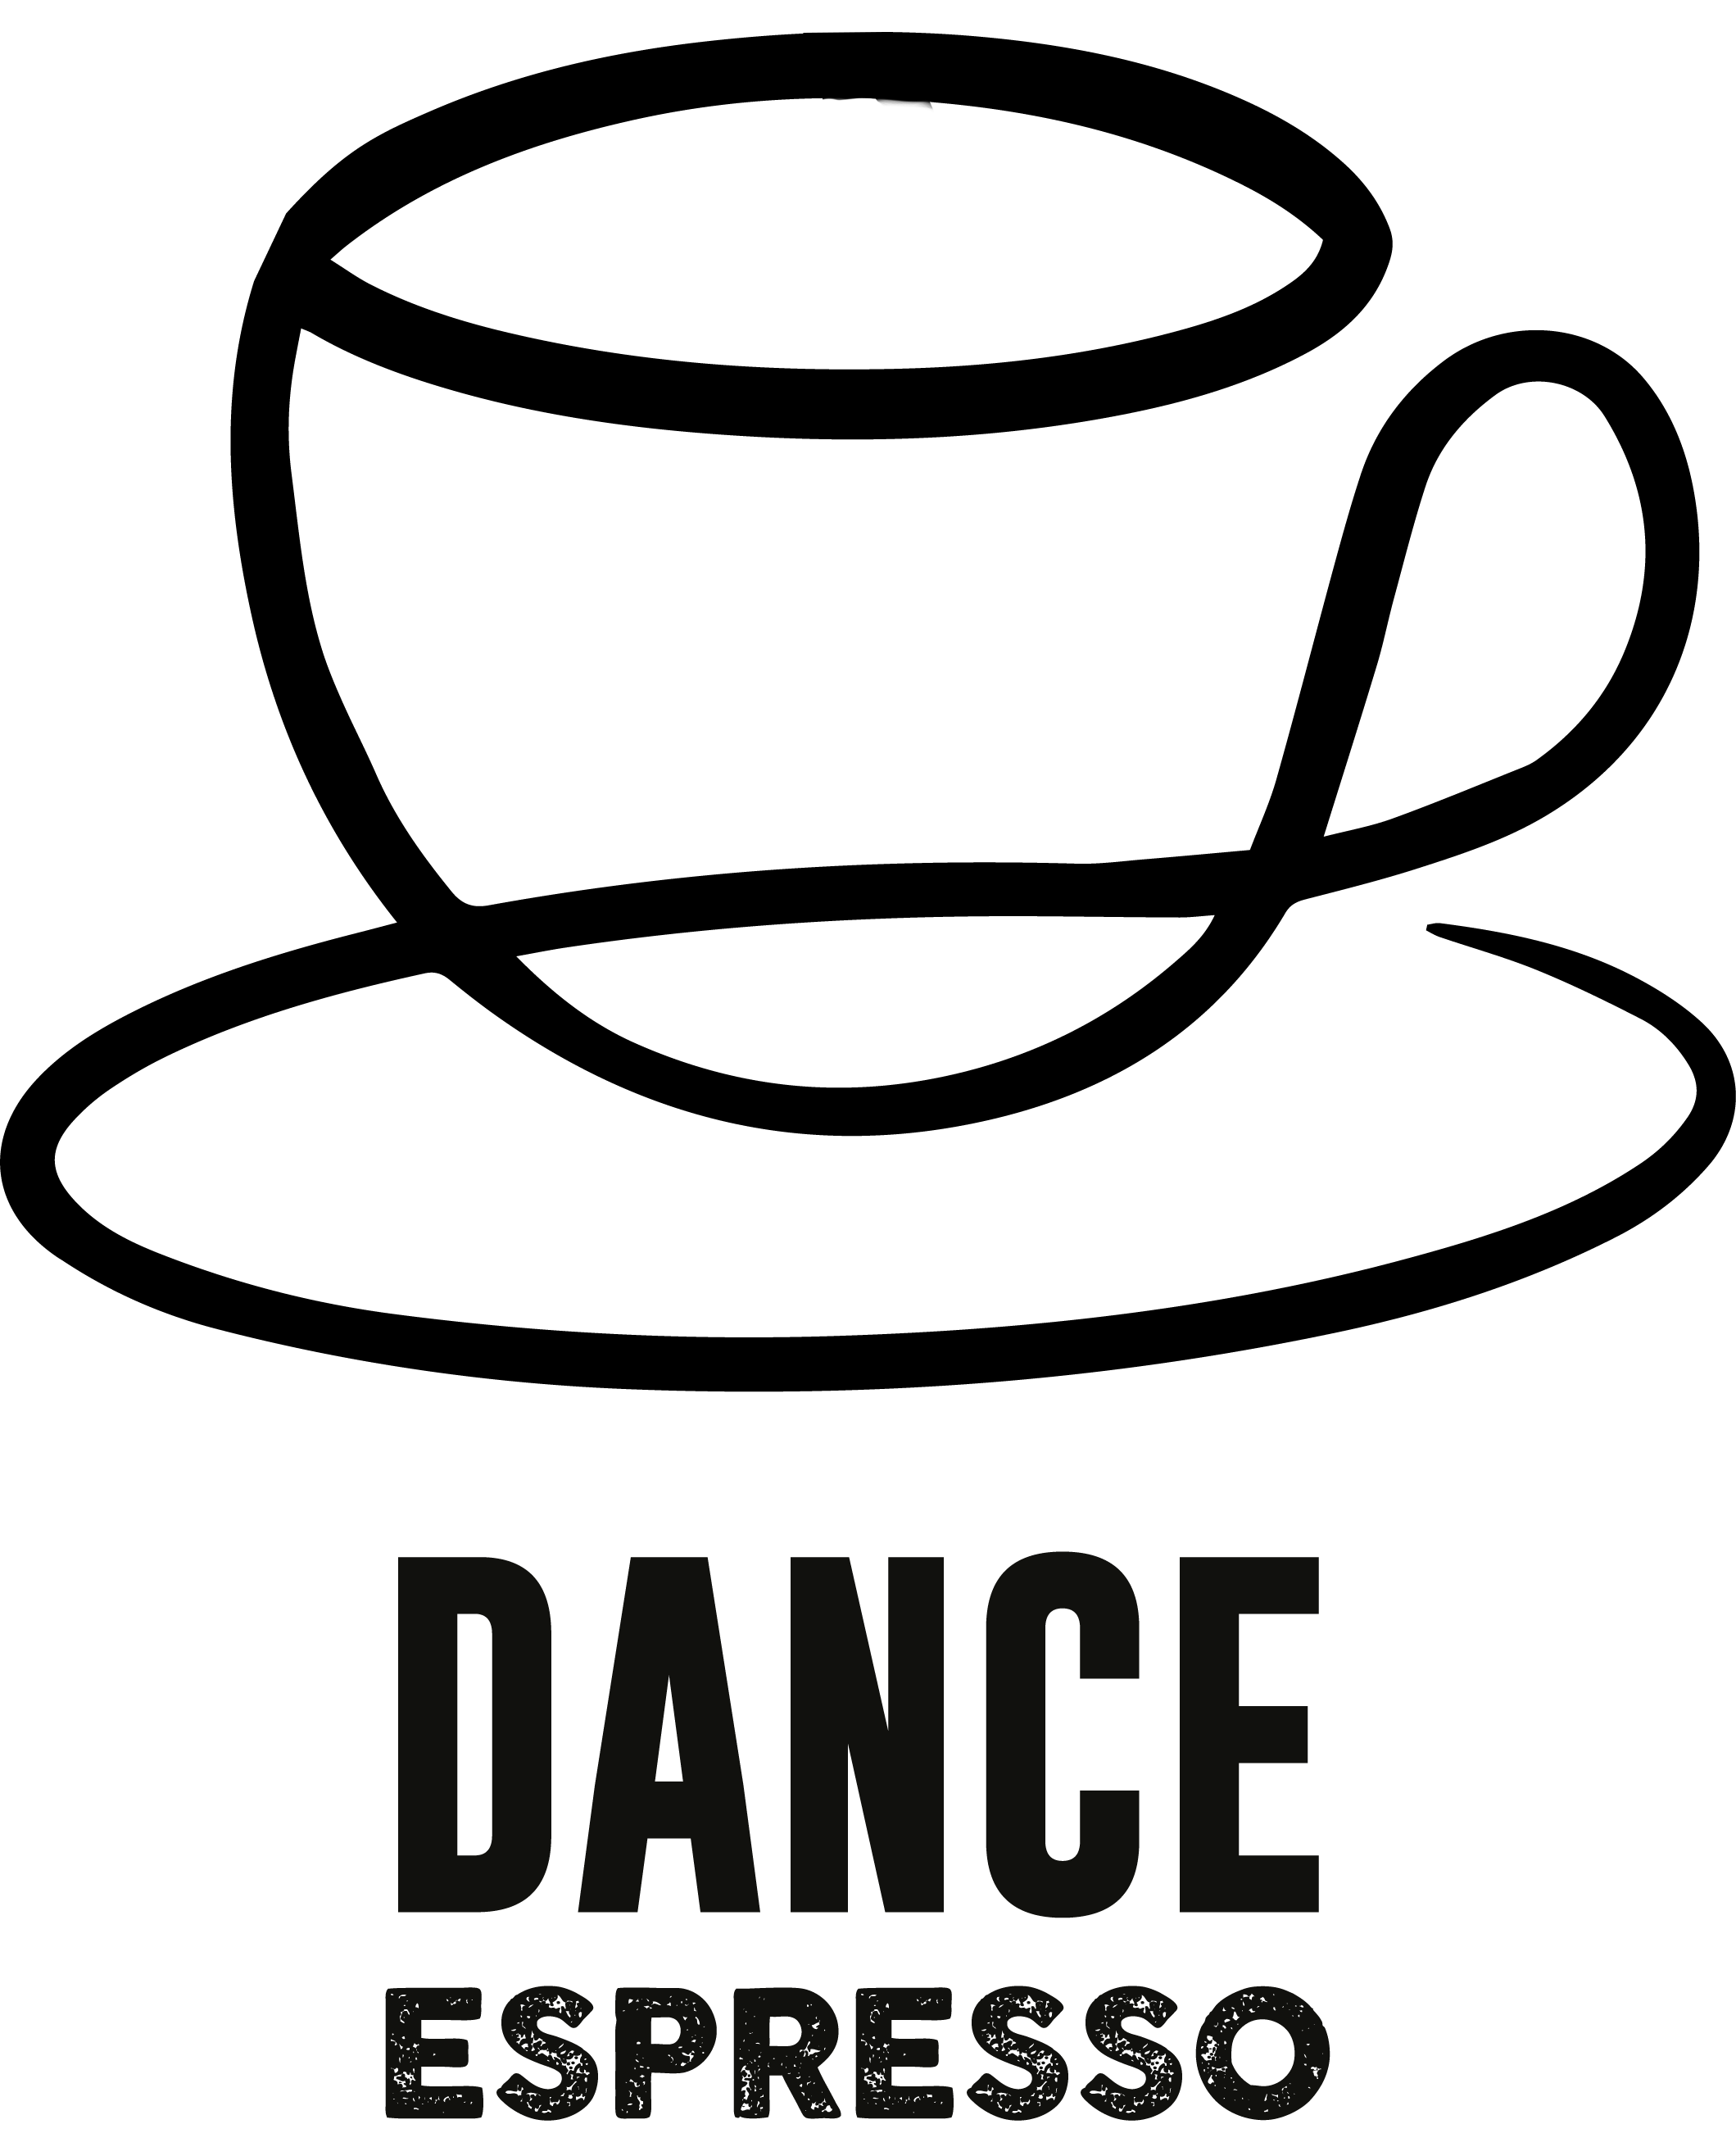 The official Dance Espresso logo